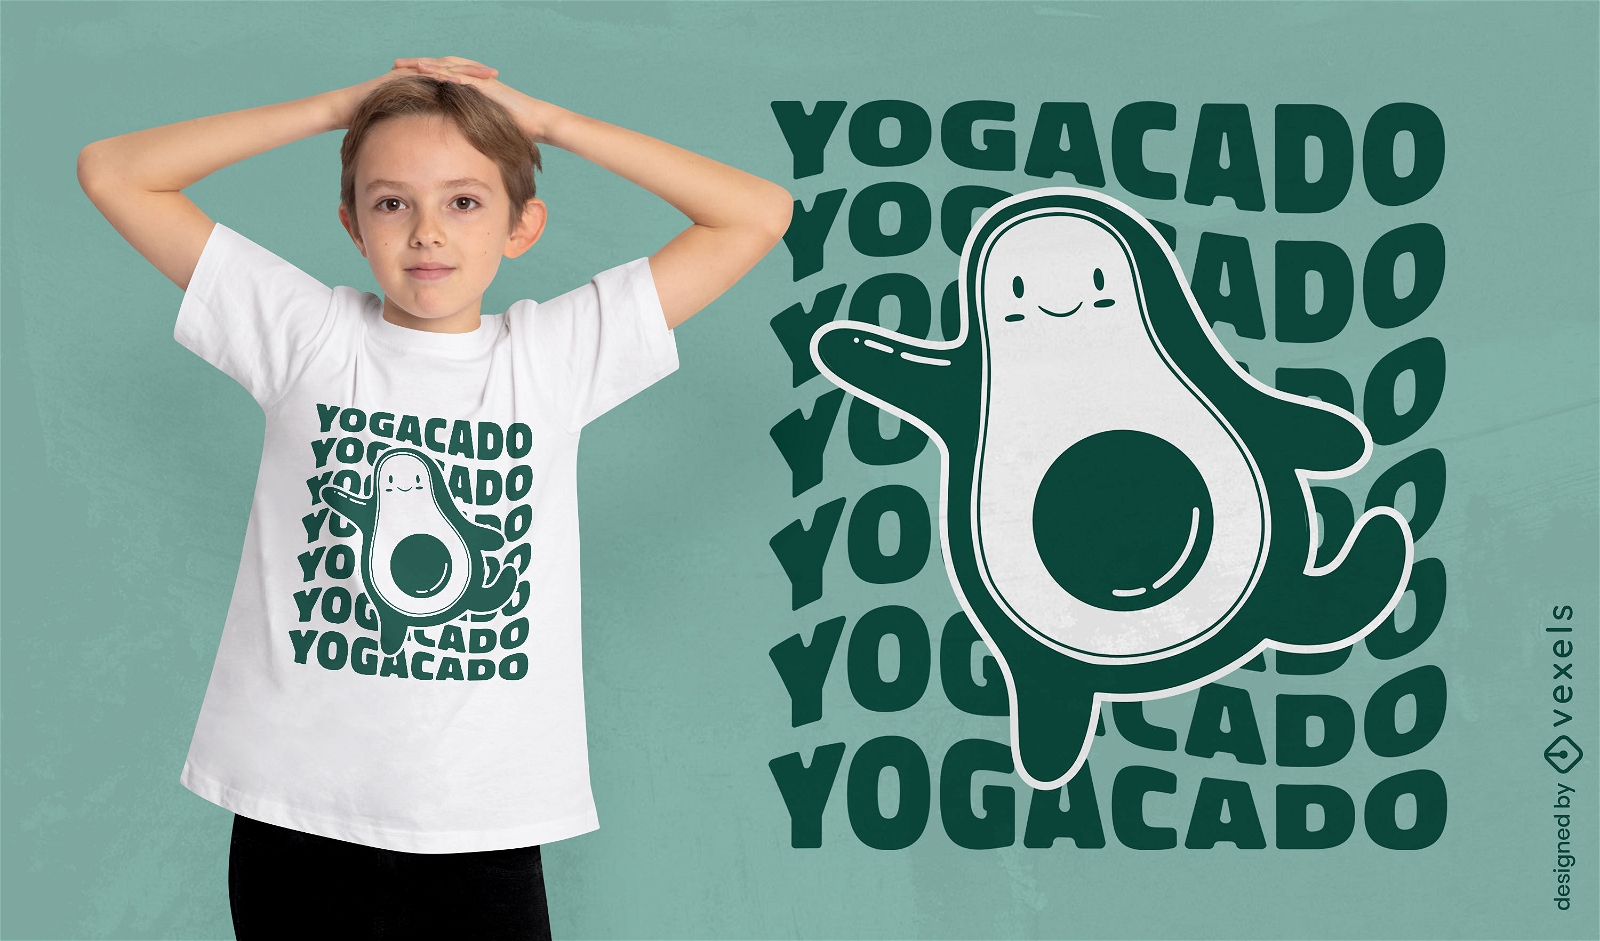 Yogacado yoga avocado t-shirt design